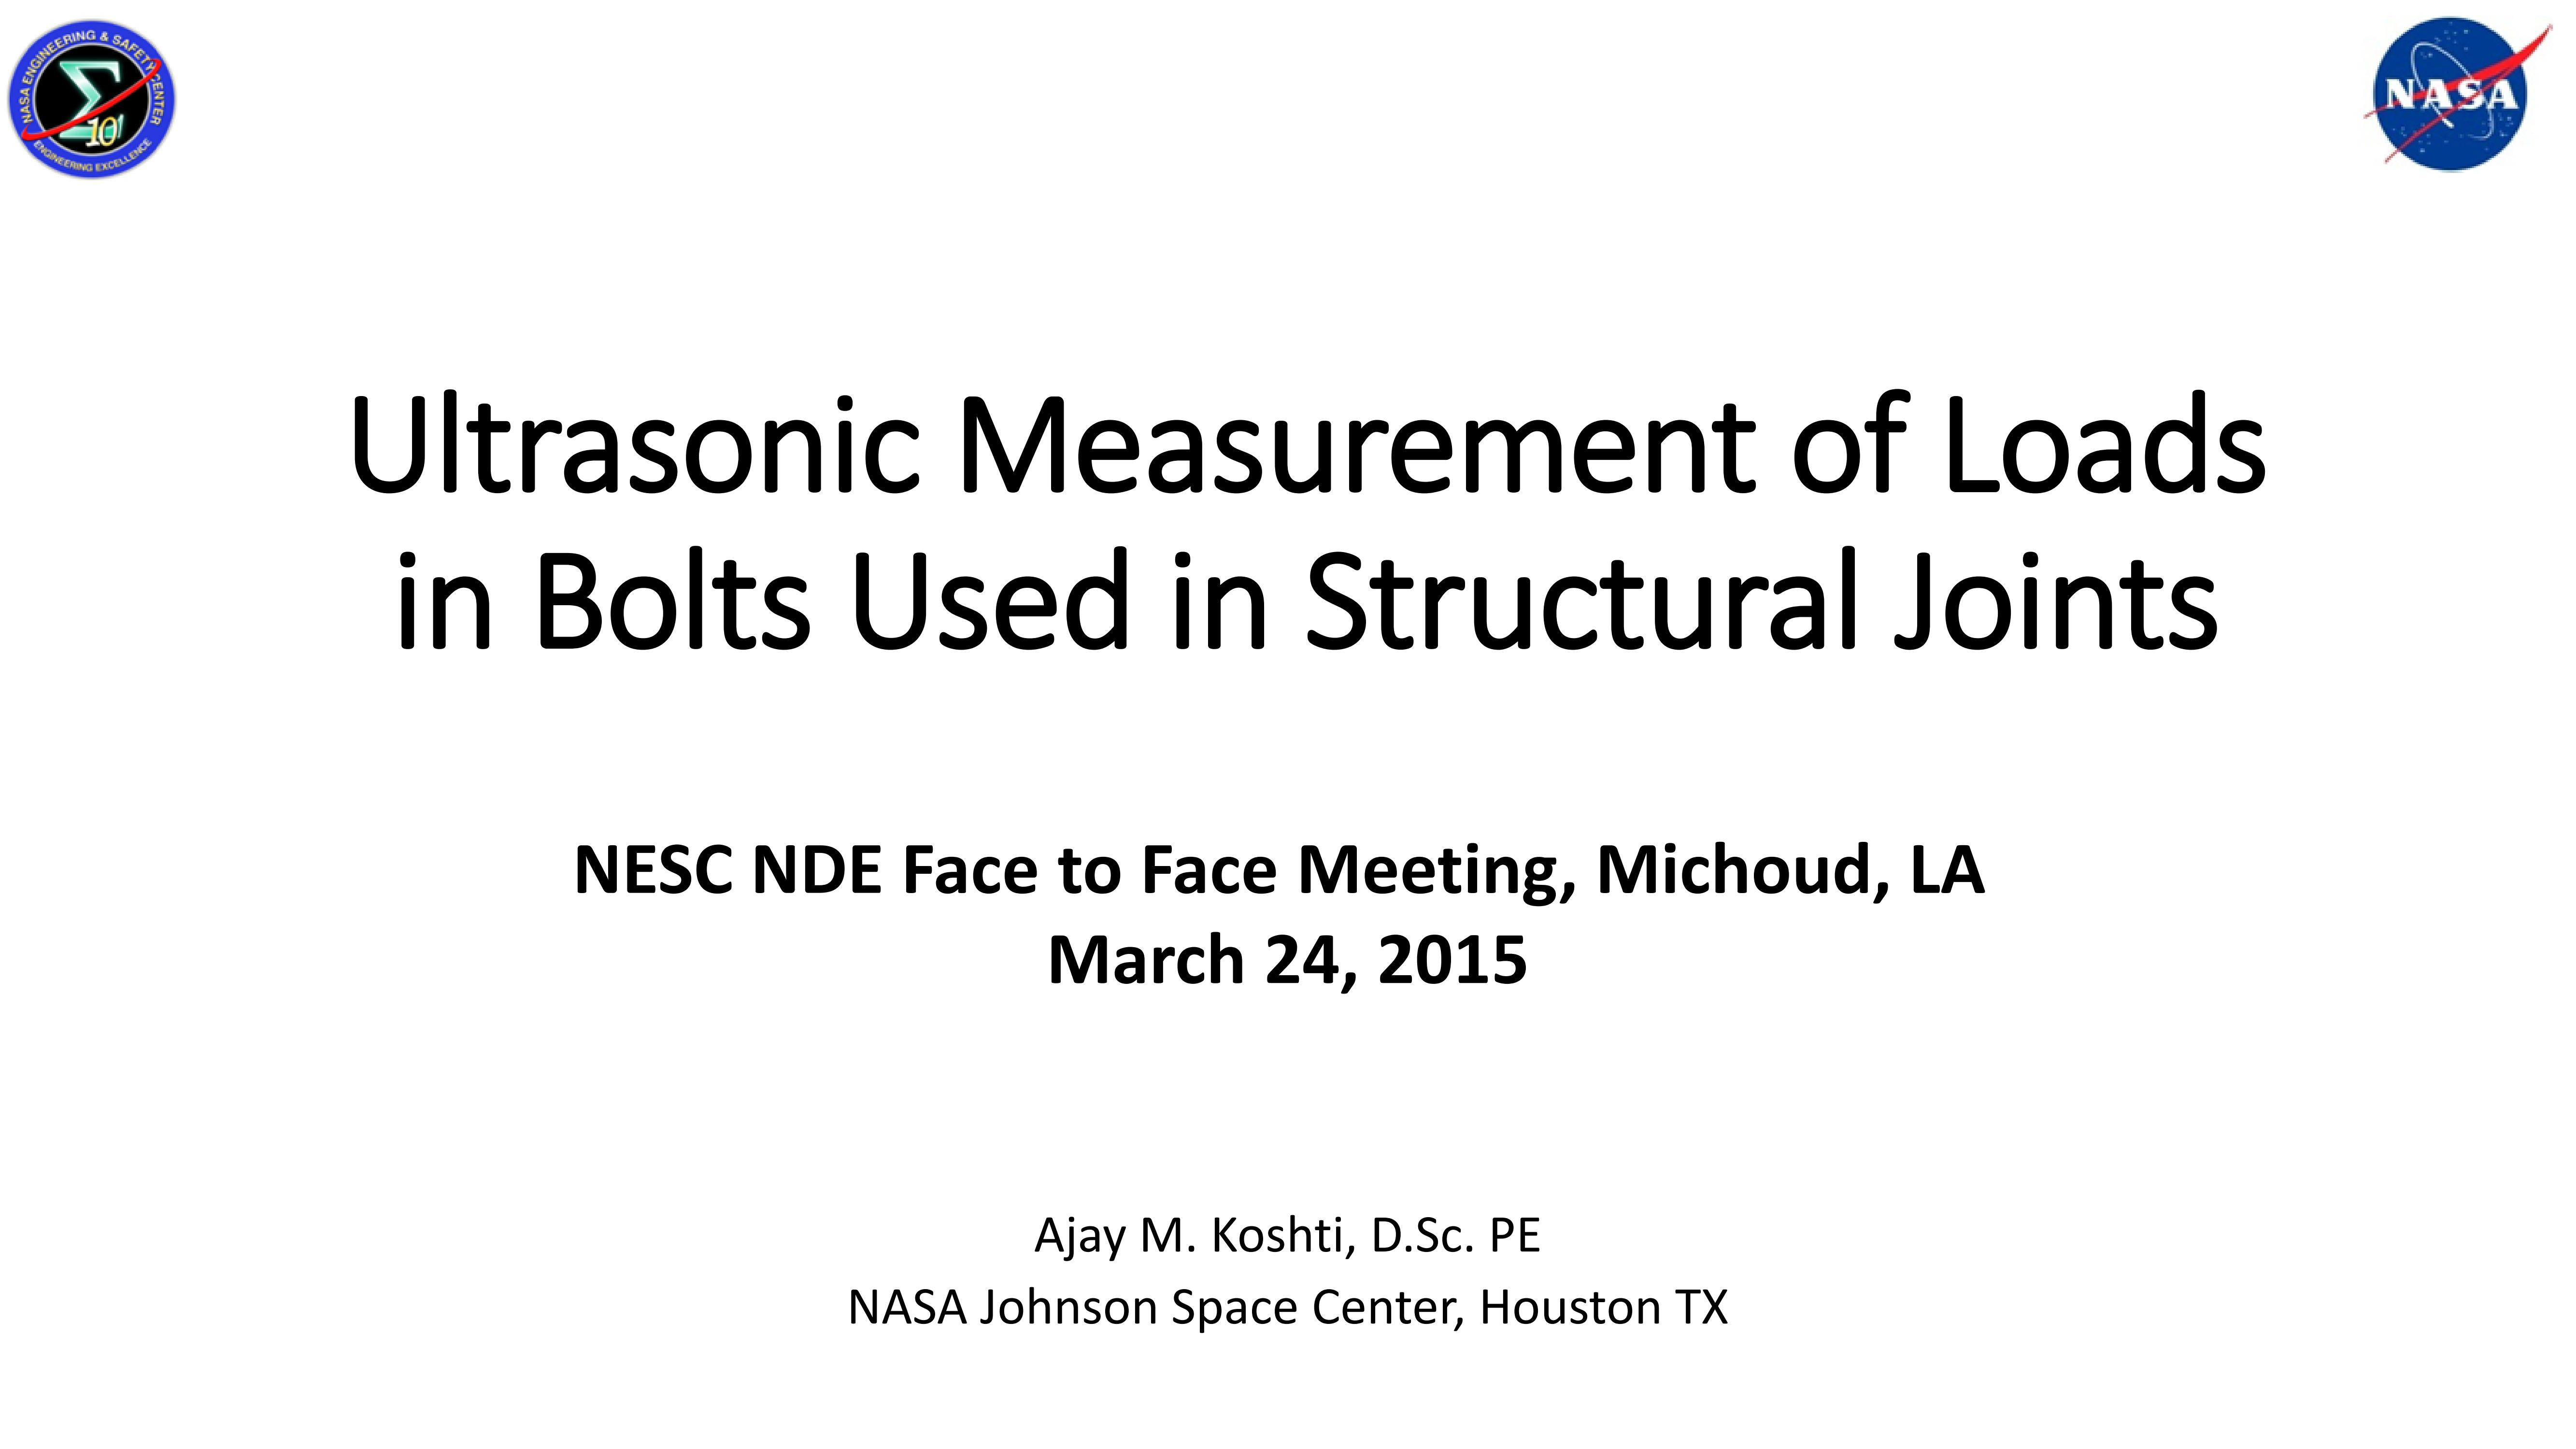 超声波螺栓预紧力测量在NASA的应用